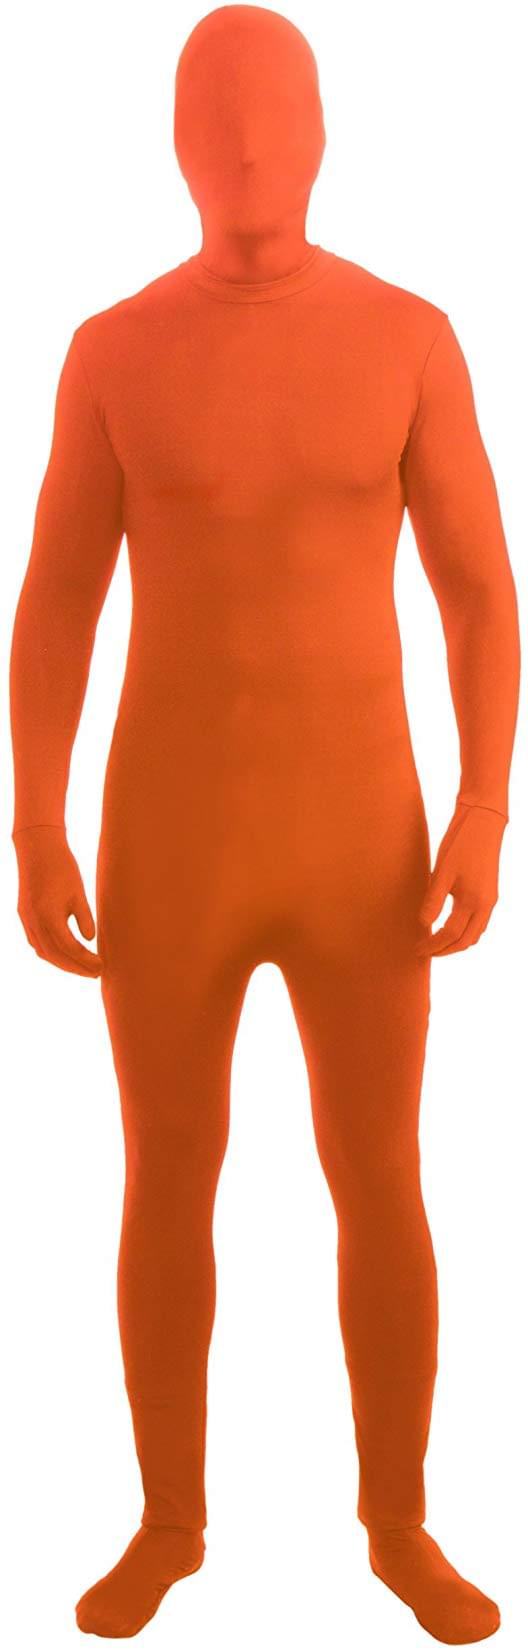 Orange Body Paint 3.4 Oz — Costume Super Center